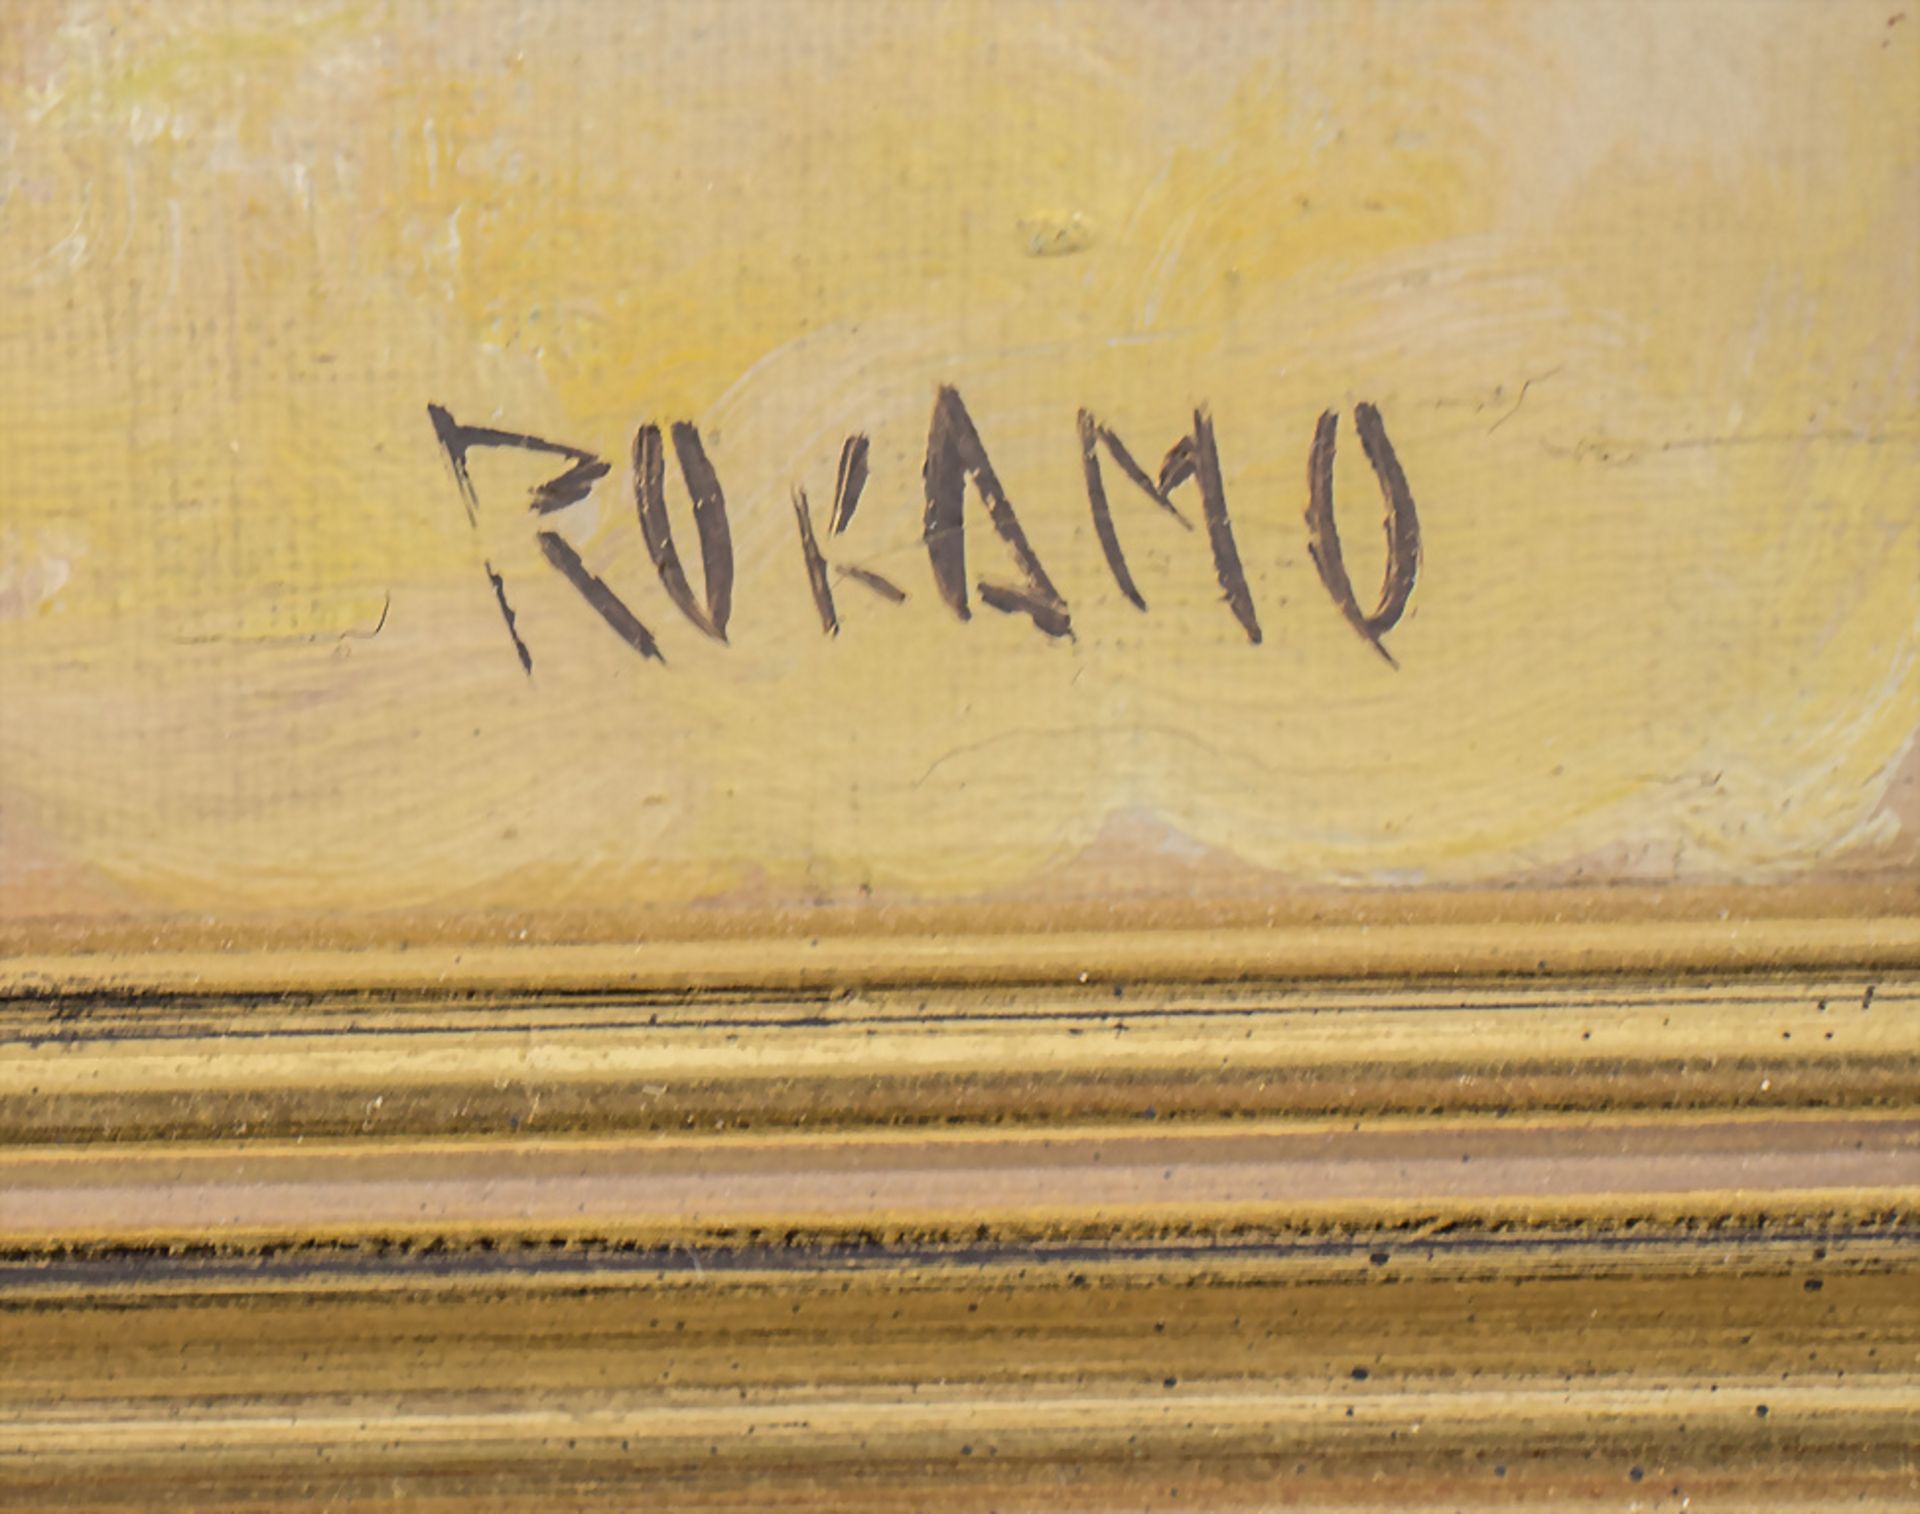 Monogrammist 'Rokamo', 'Auf dem Markt' / 'At the market', Indonesien, 20. Jh. - Image 3 of 5